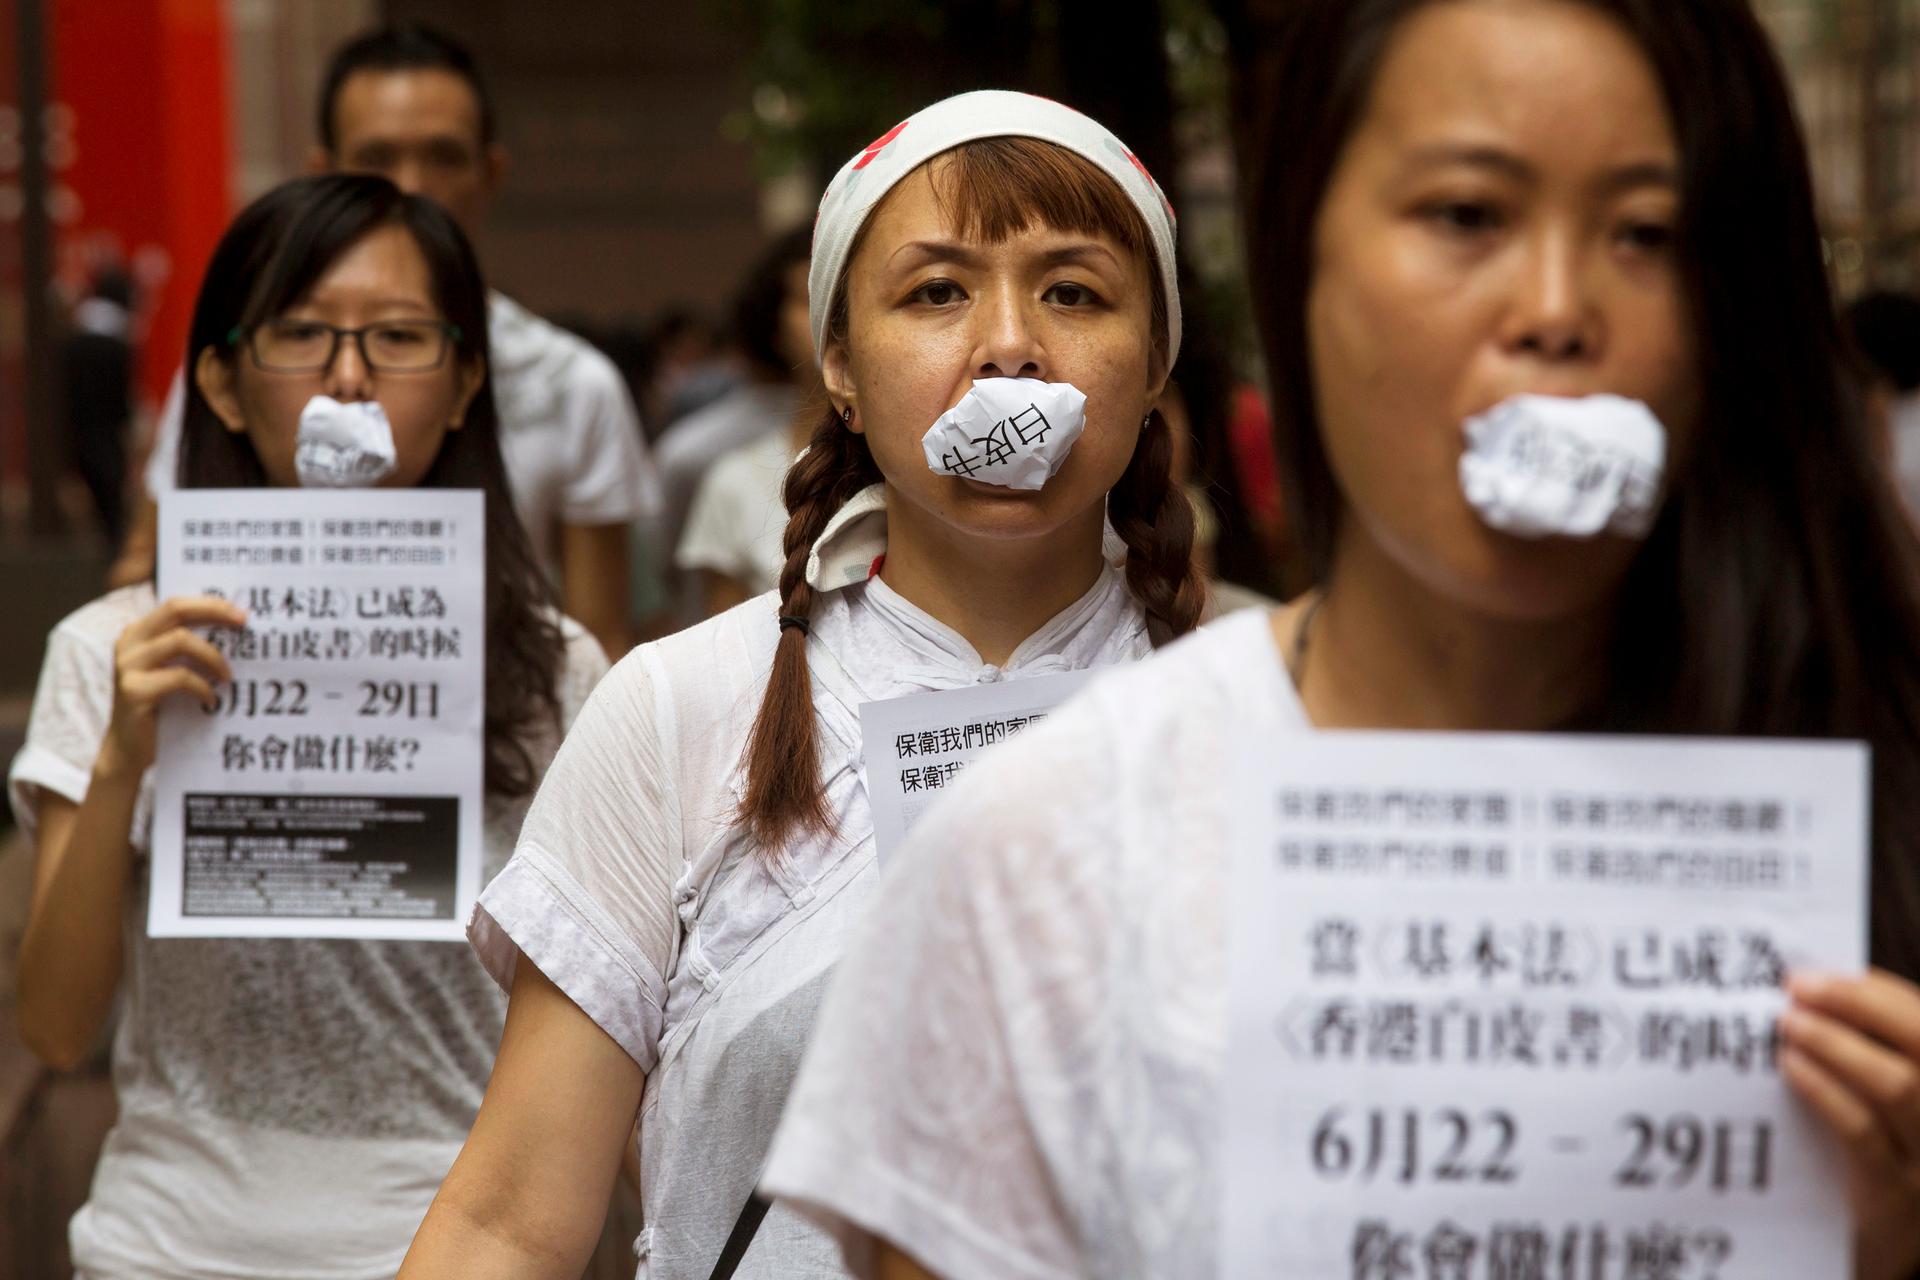 Hong Kong China free speech protest